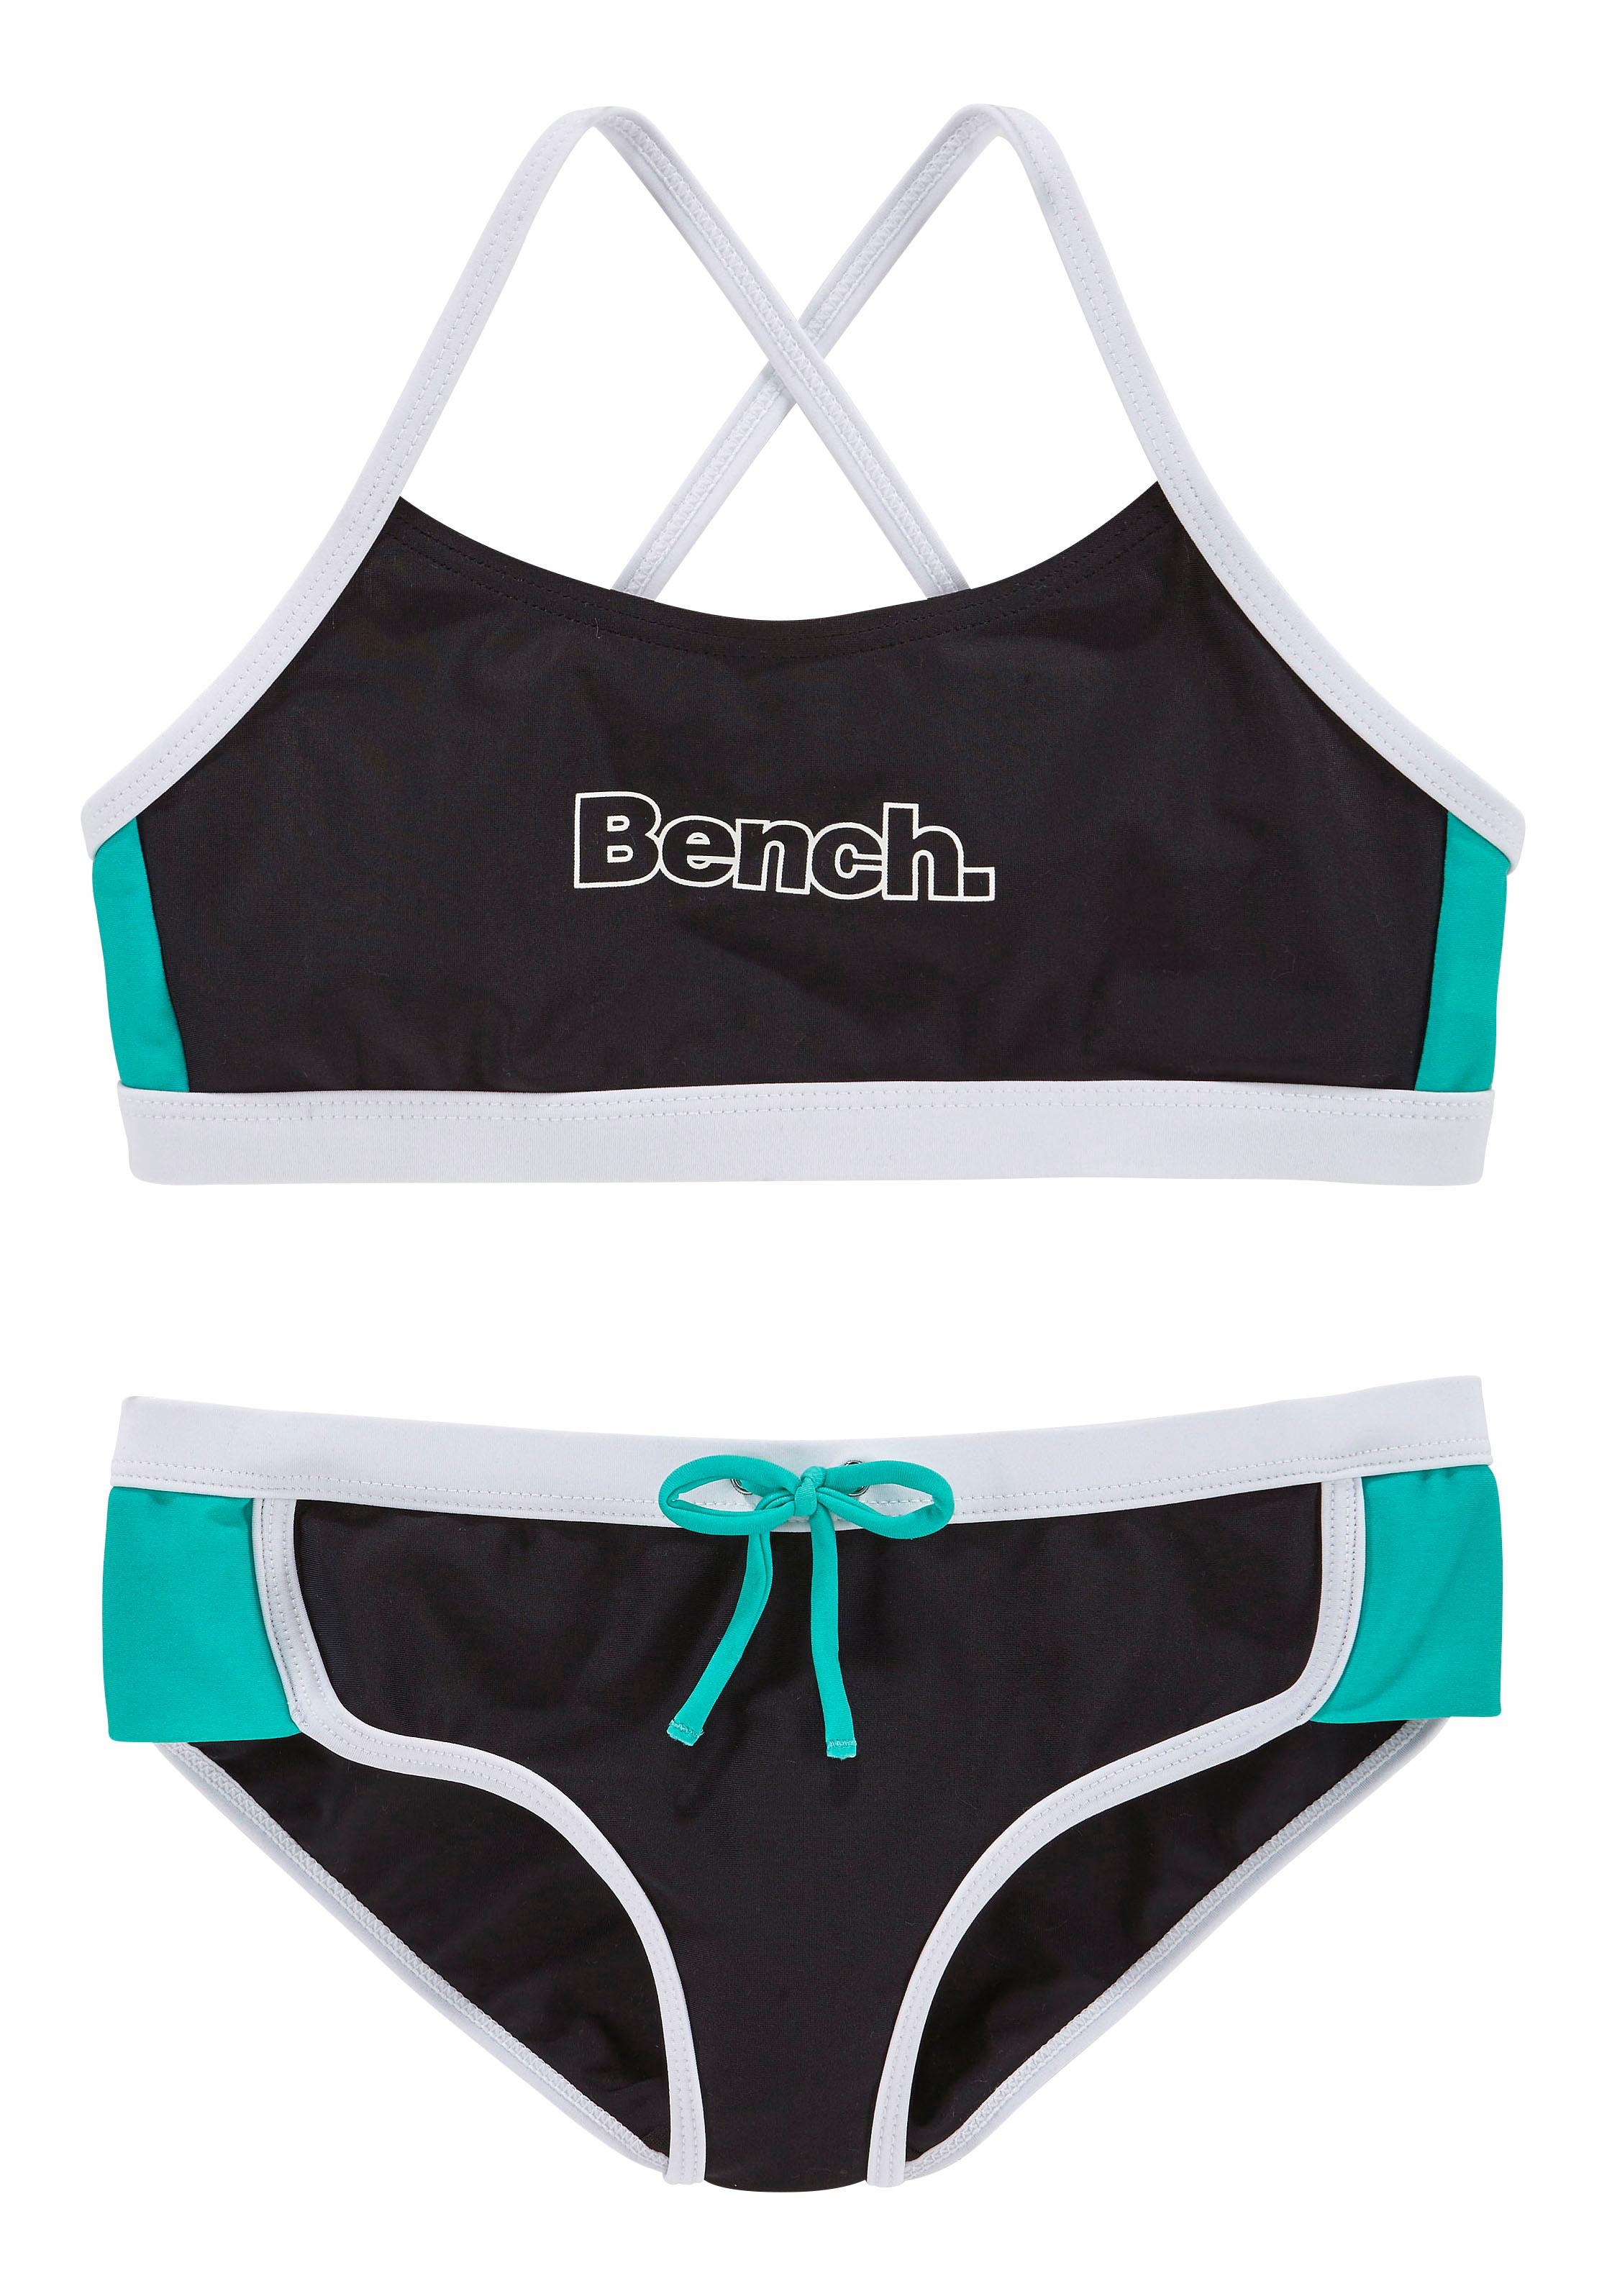 ohne mit Kontrastdetails - Mindestbestellwert bestellen versandkostenfrei Bustier-Bikini, Bench. Modische